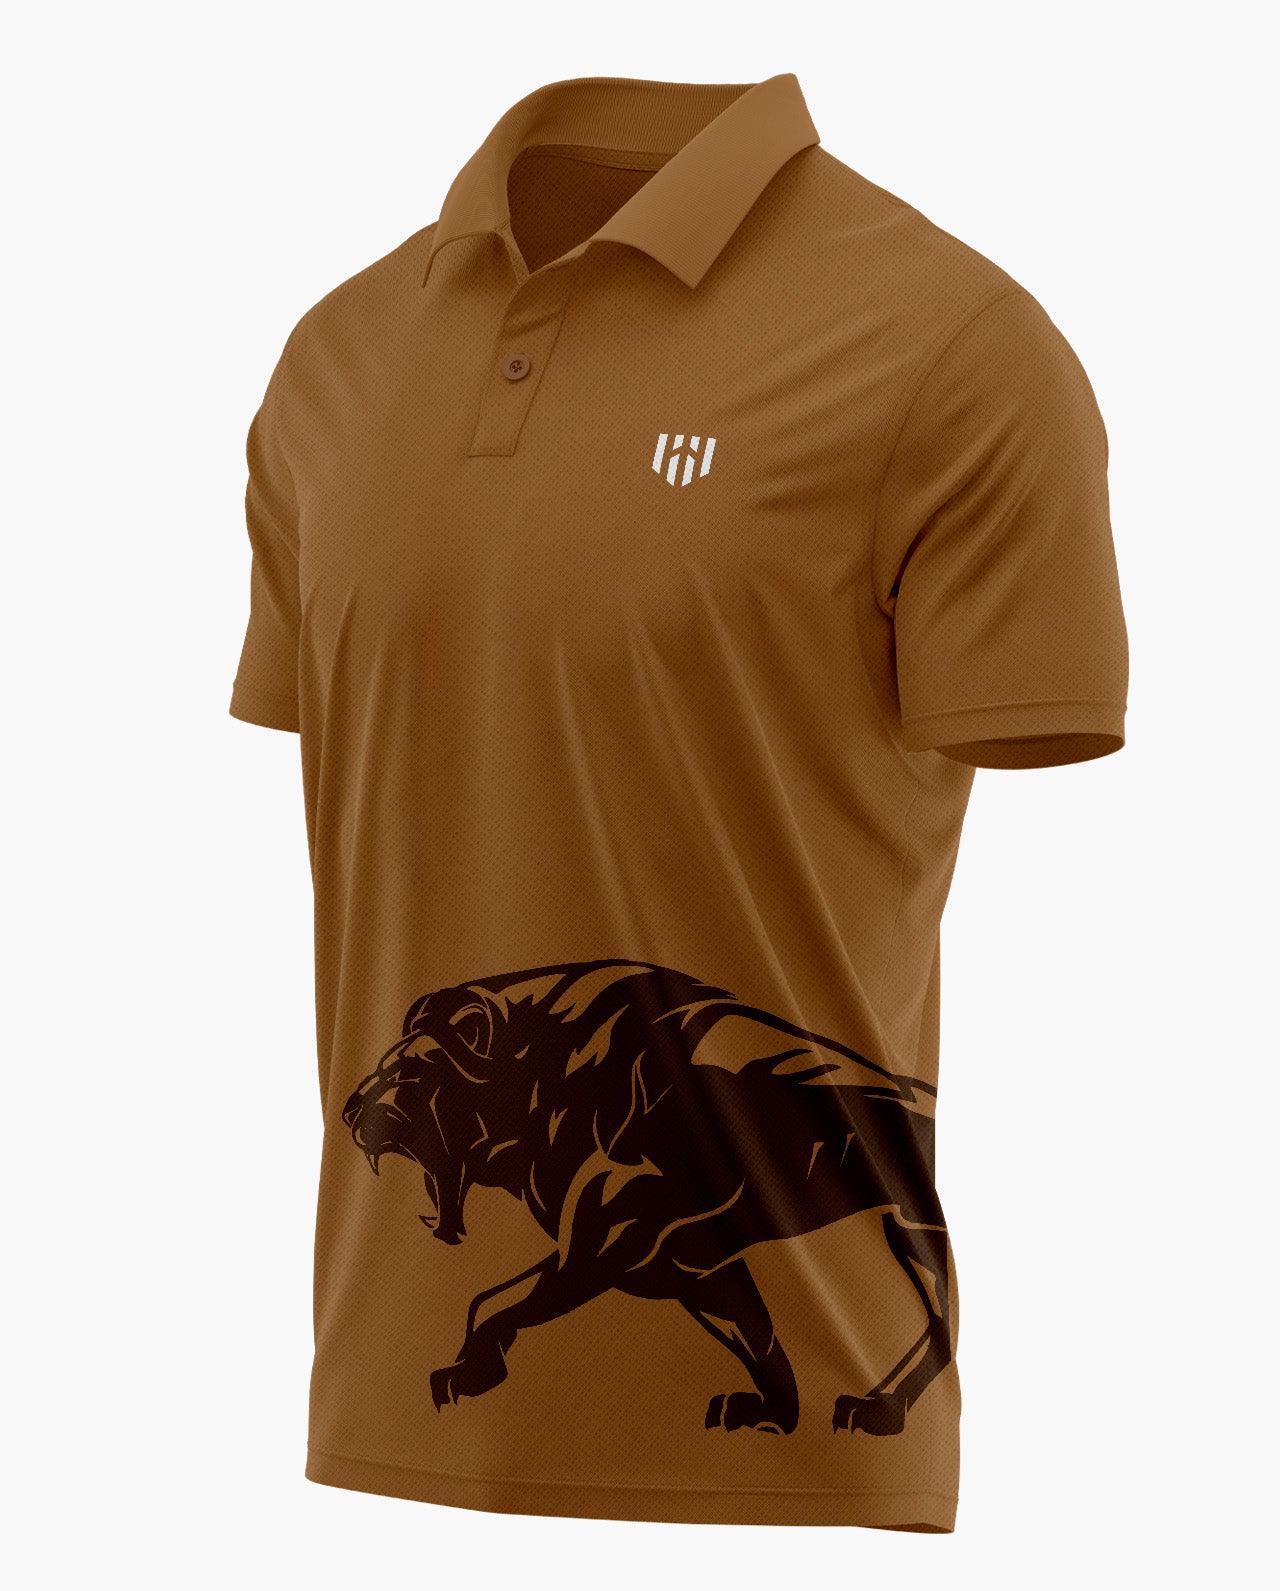 Lion's Fury Polo T-Shirt - Aero Armour